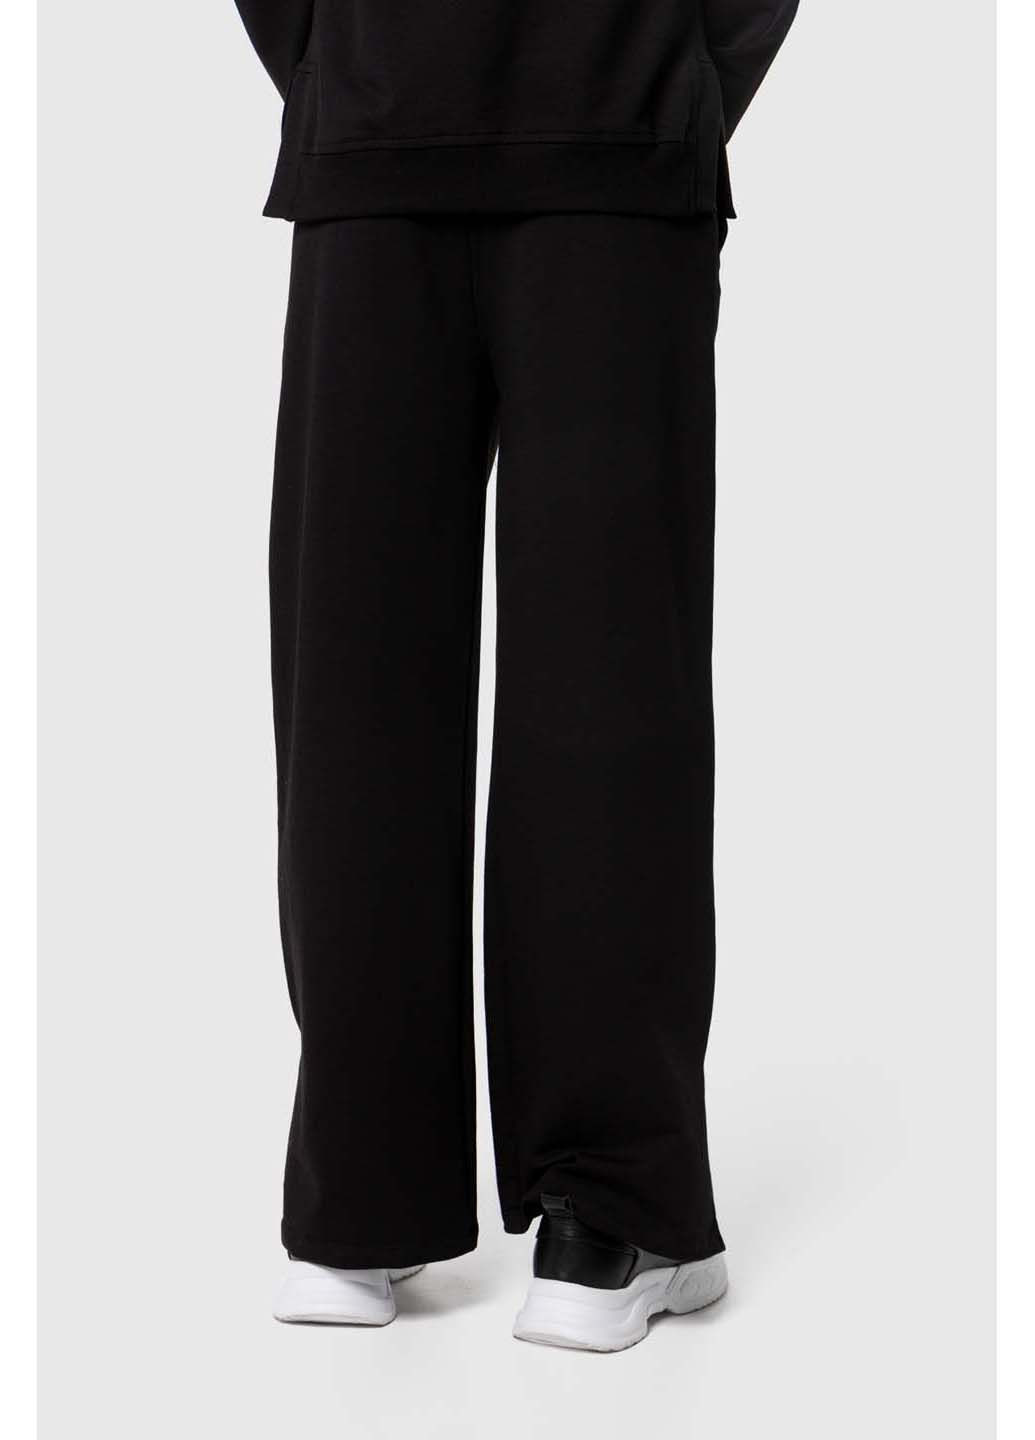 Чорний демісезонний костюм худі штани Viollen